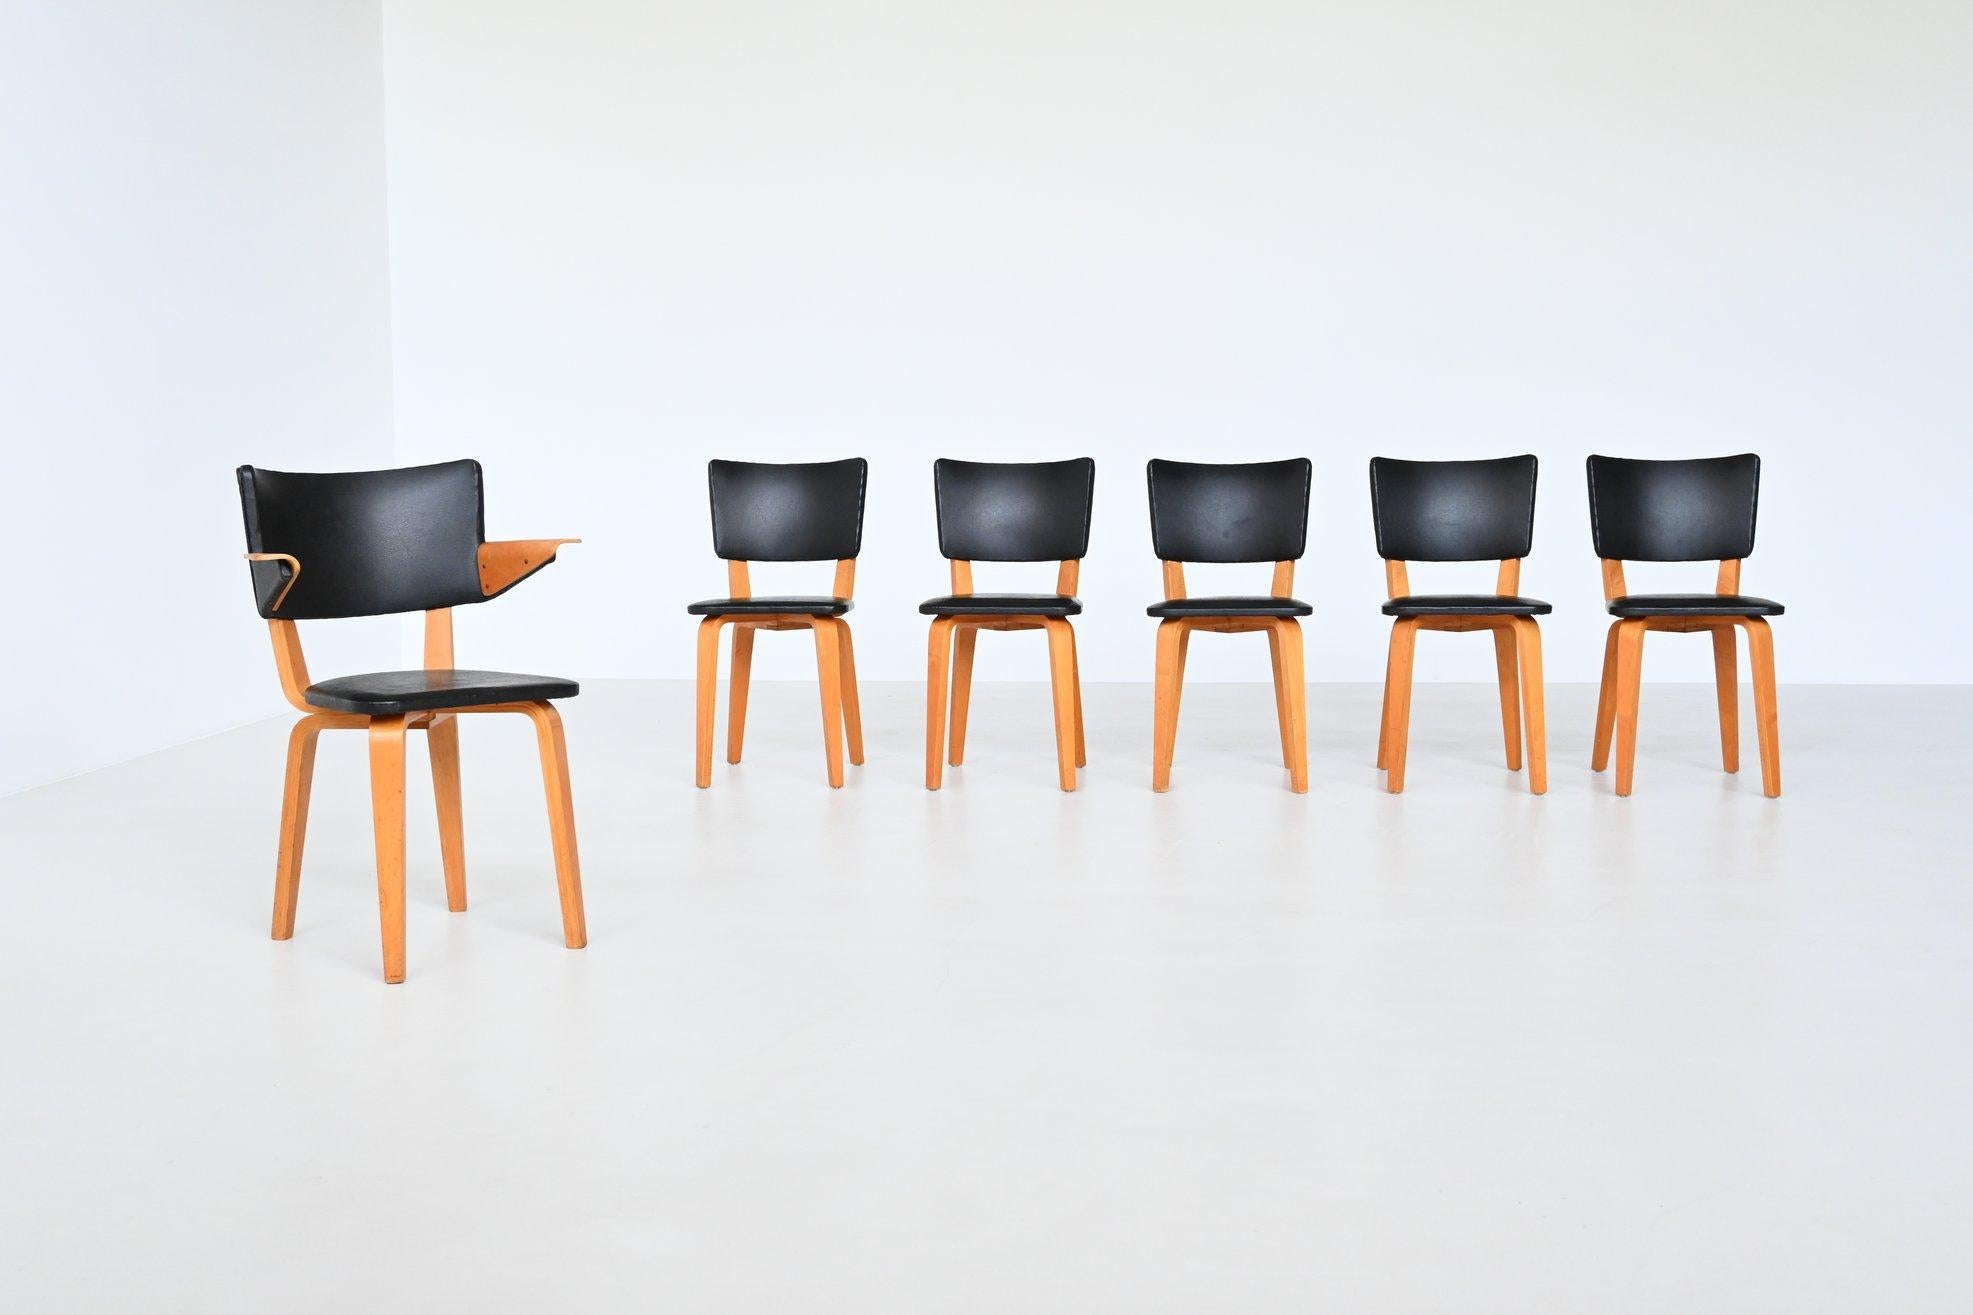 Muy bonito y original juego de seis sillas de comedor modelo 500 diseñado por Cor Alons & J.C. Jansen y fabricada por Gouda Den Boer, Países Bajos 1949. Estas sillas están hechas de contrachapado de abedul utilizando las mismas técnicas que Charles